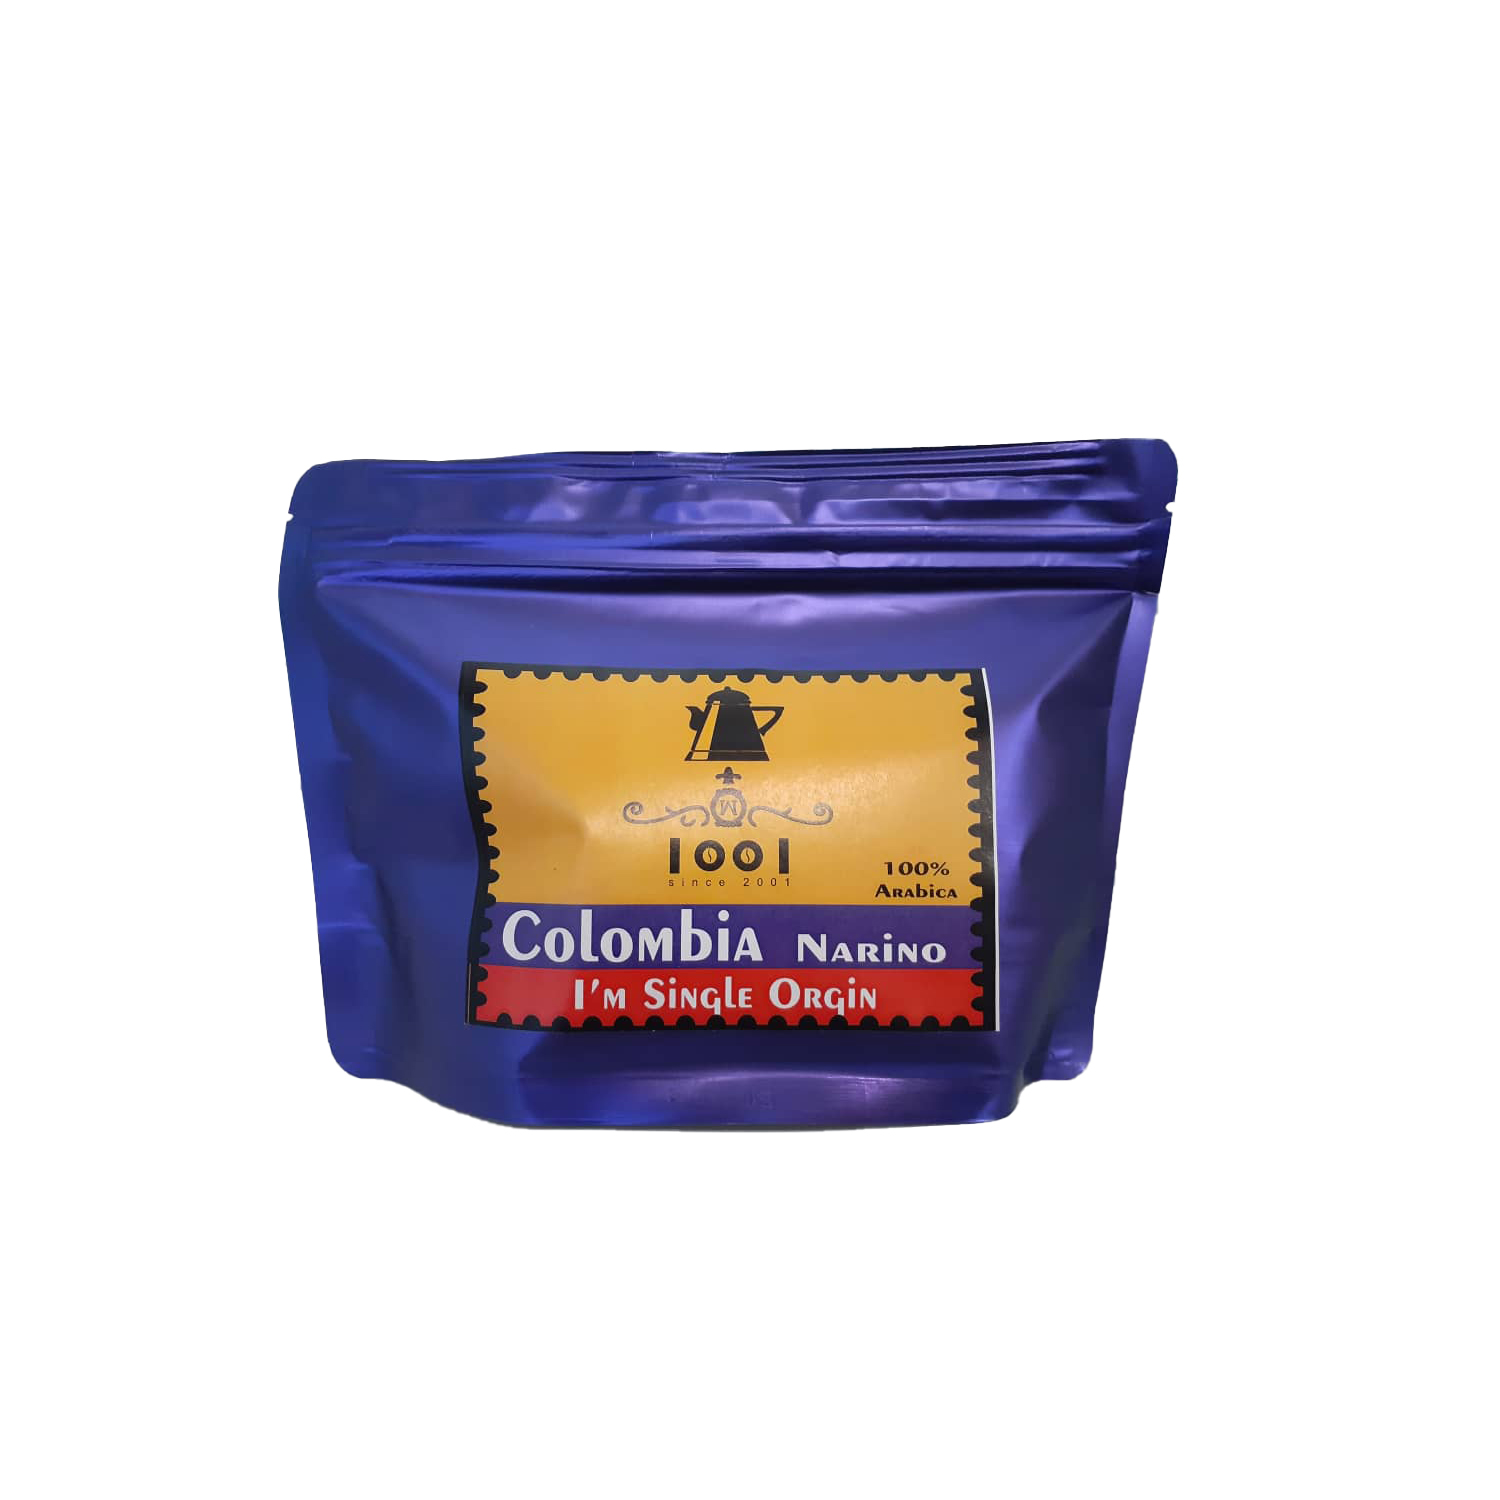 قهوه عربیکا کلمبیا نارینو 1001 - 250 گرم